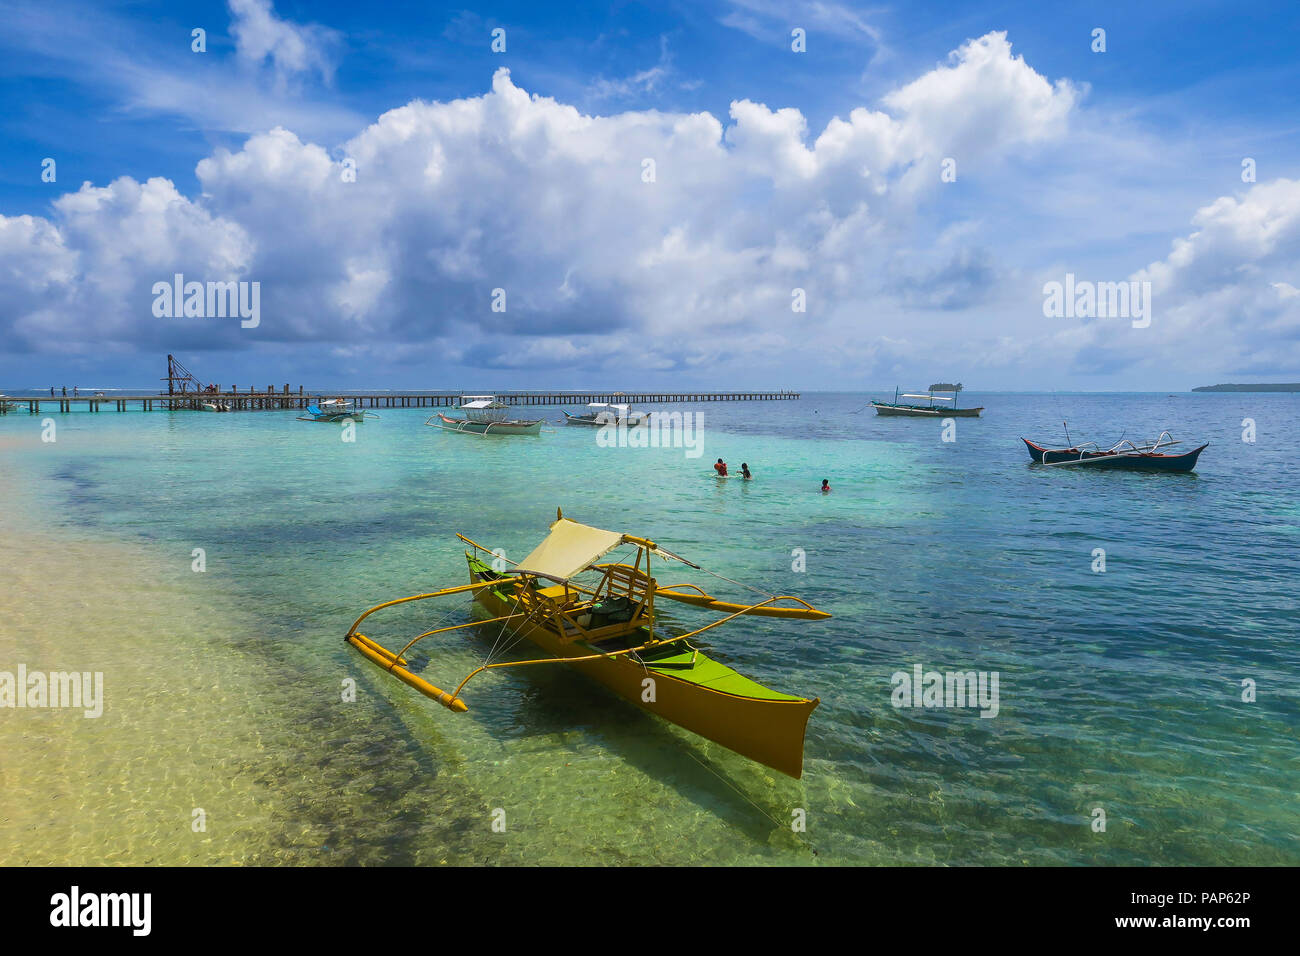 Giallo rustico barca da pesca lungo la spiaggia in una giornata di sole, con impressionante formazione di nuvole - isola tropicale di Siargao, Filippine Foto Stock